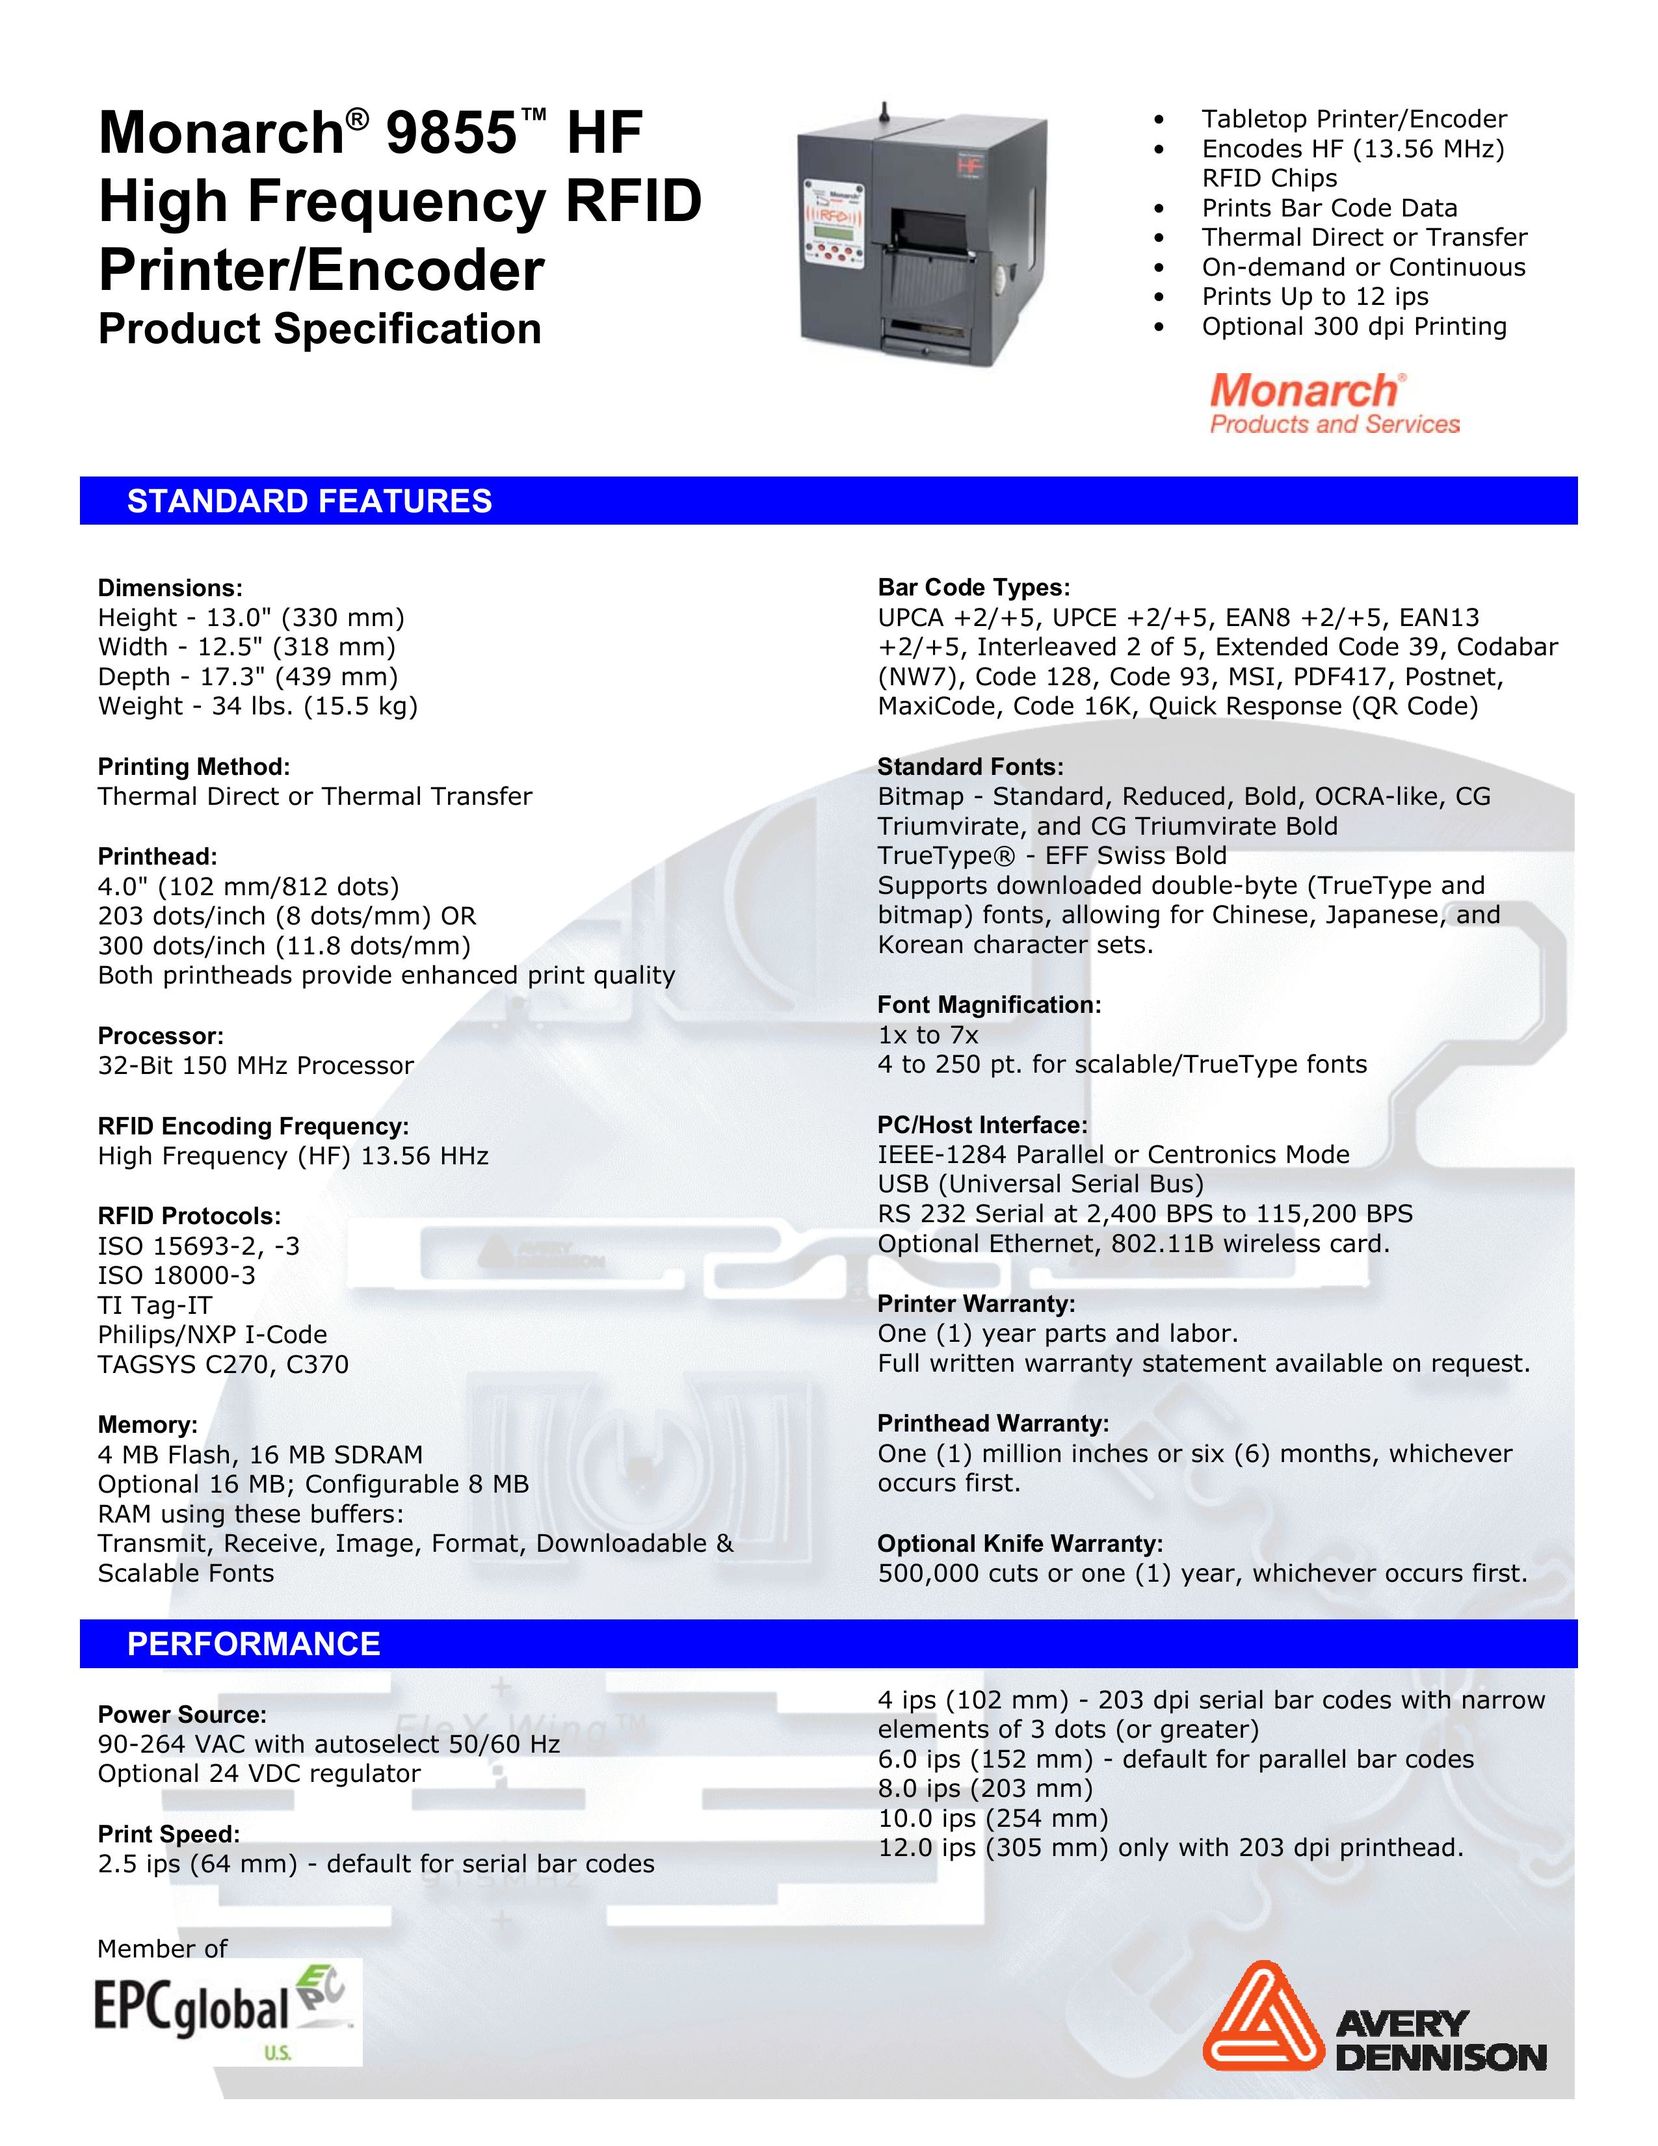 Monarch 9855 HF Printer User Manual